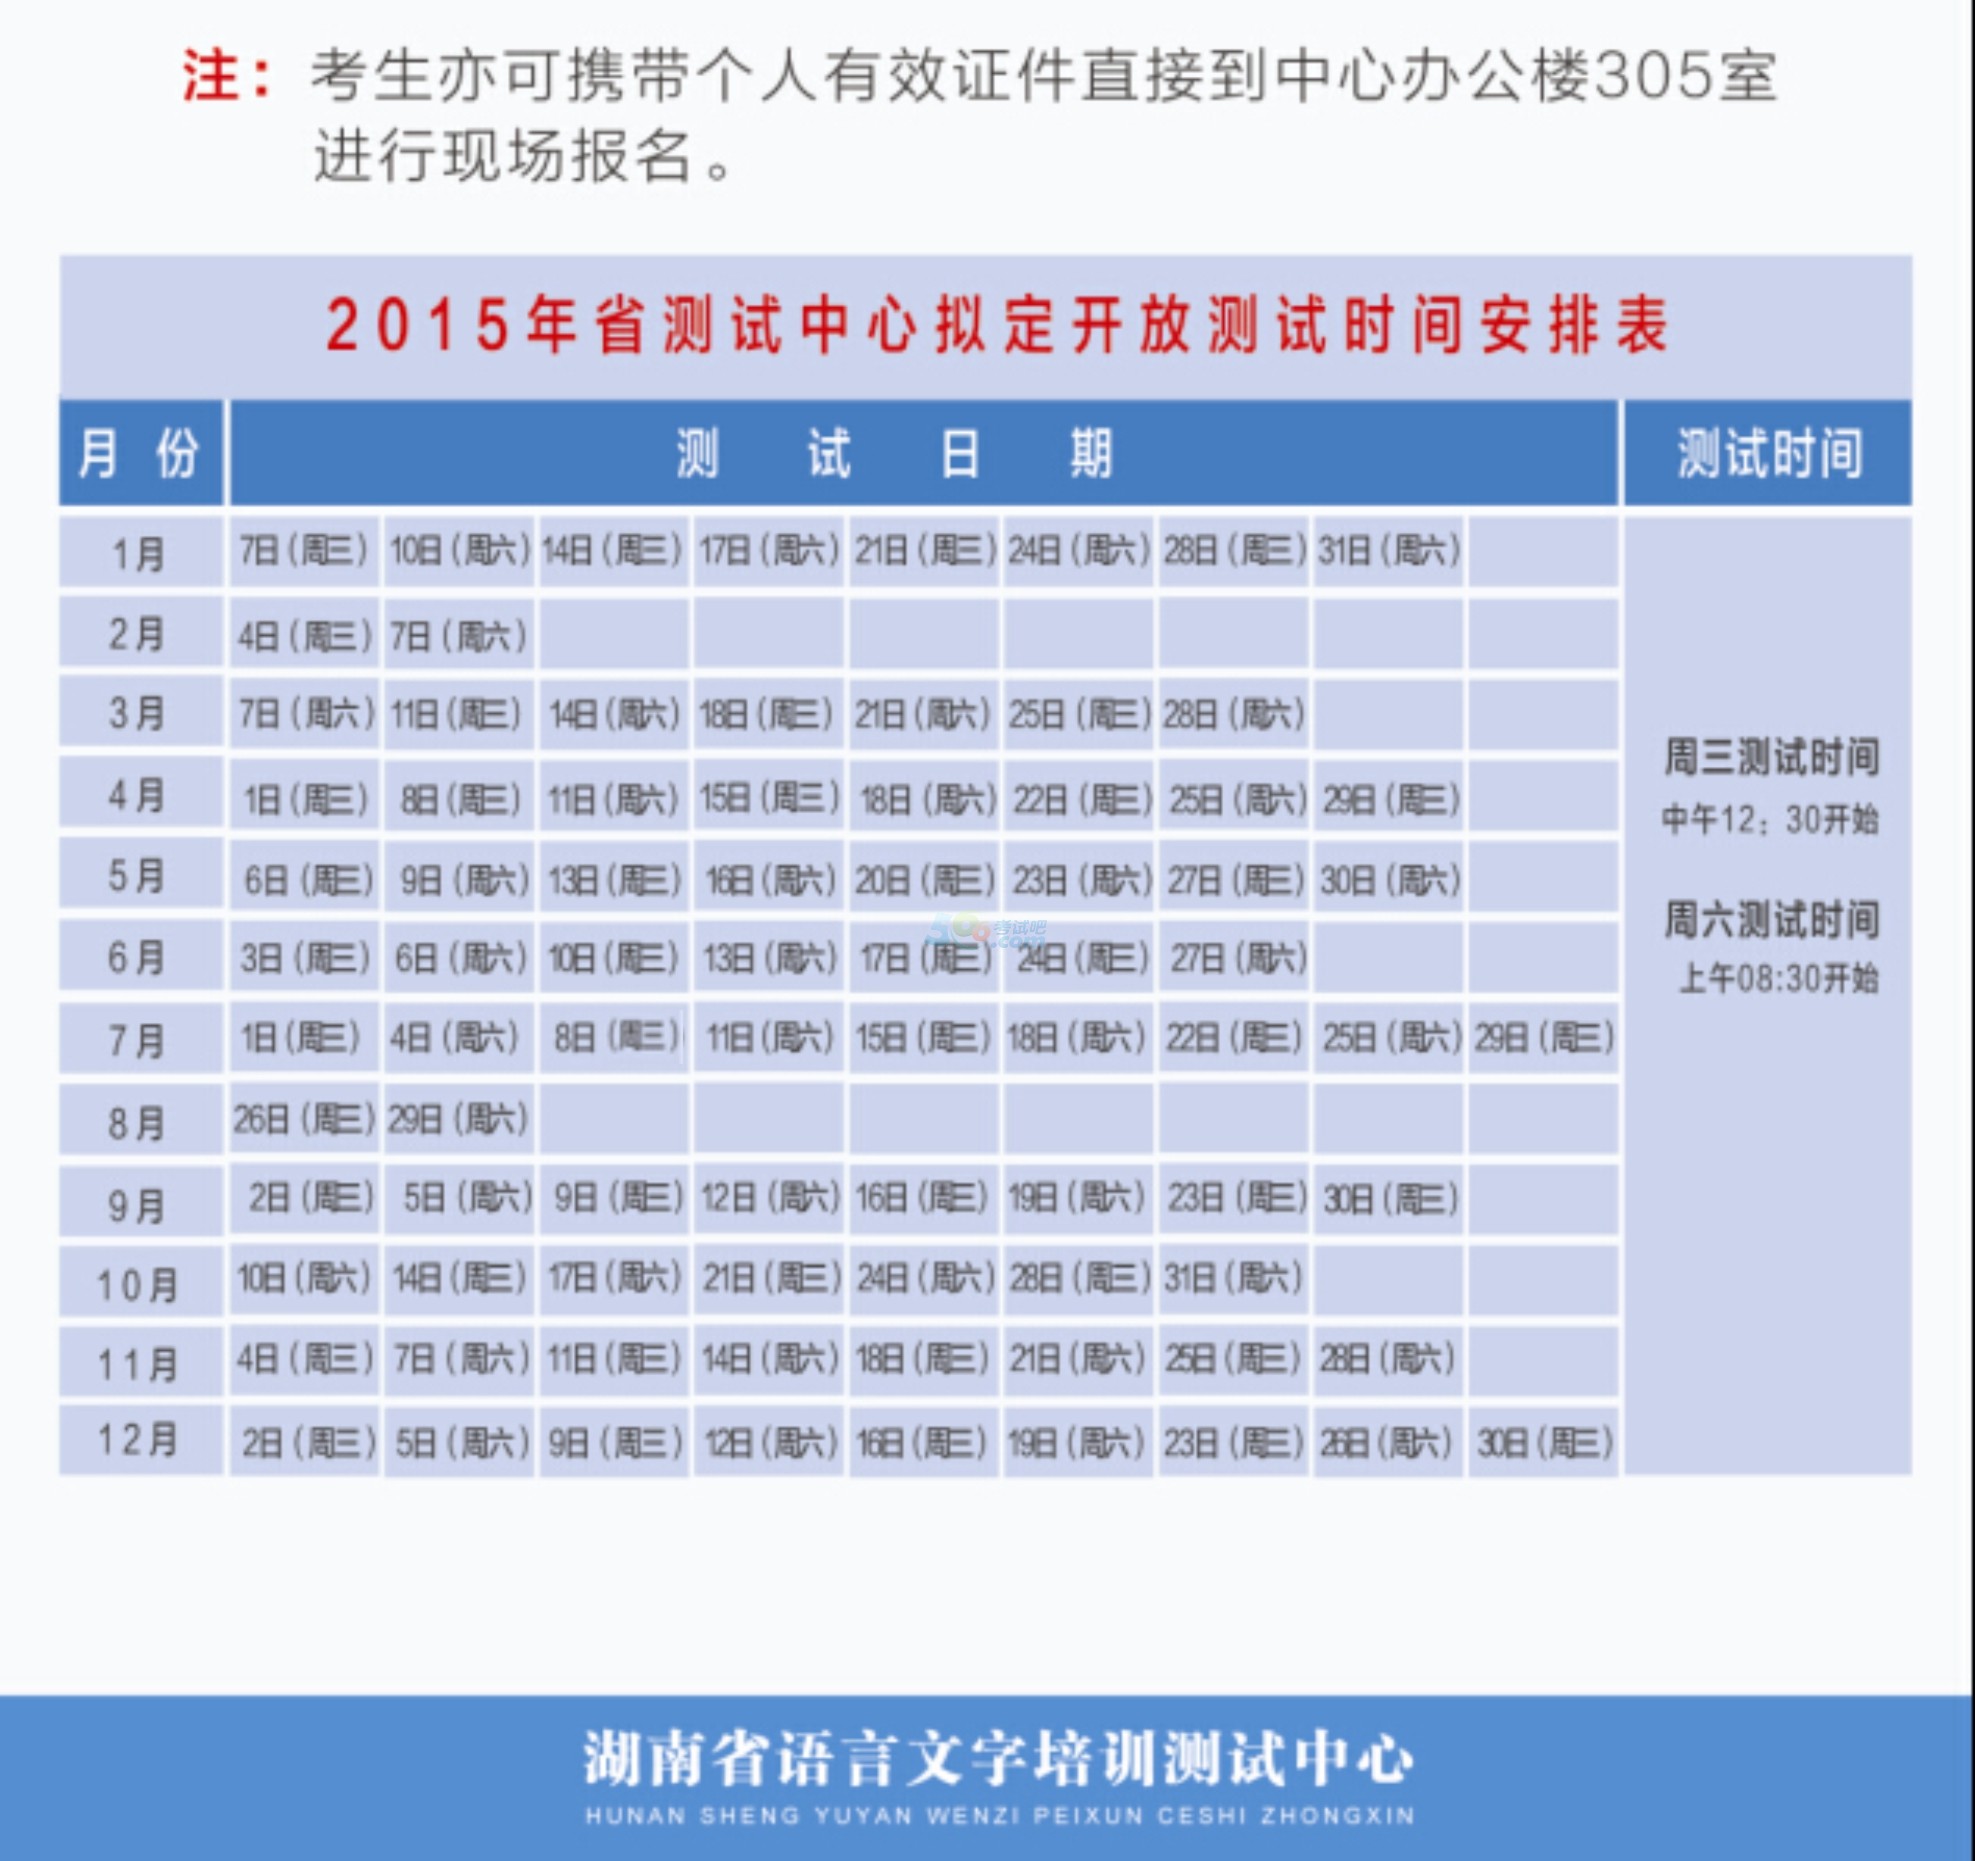 2015年全年湖南普通话考试报名时间安排-普通话考试